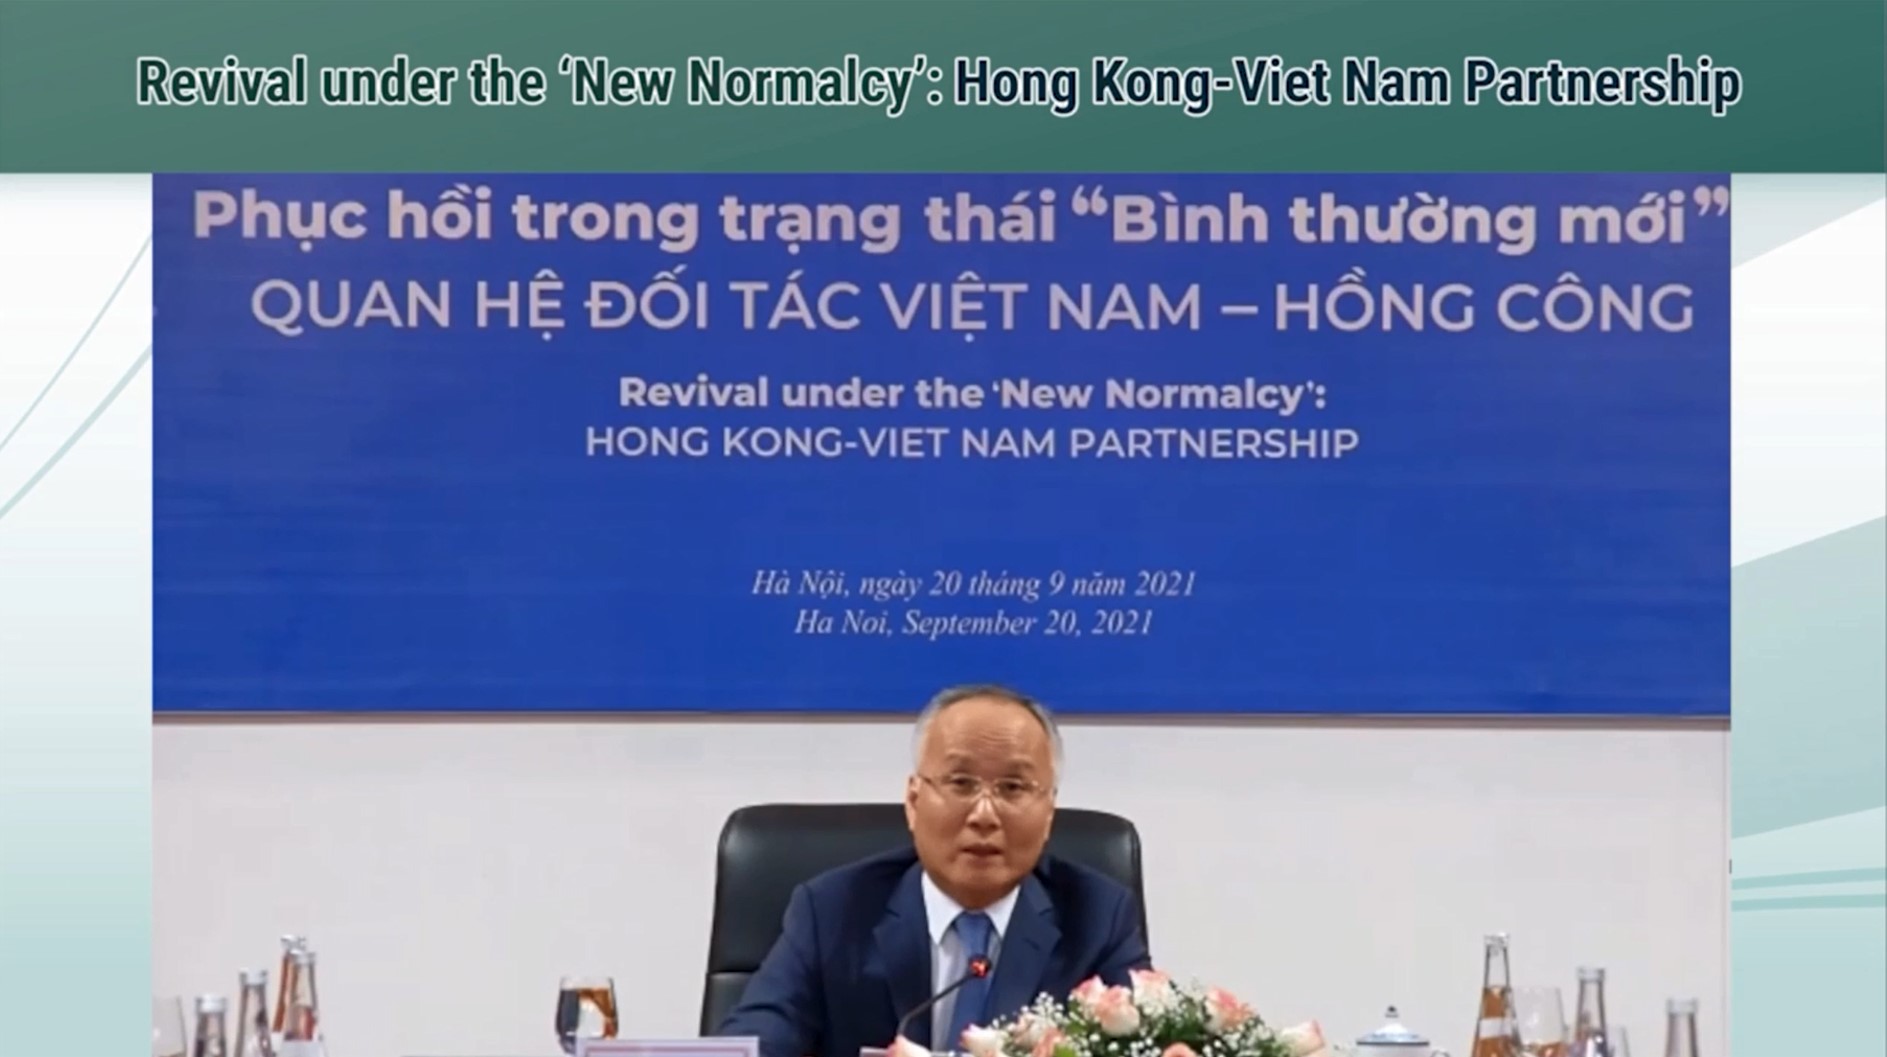 越南工业与贸易部副部长陈国庆在研讨会致辞。